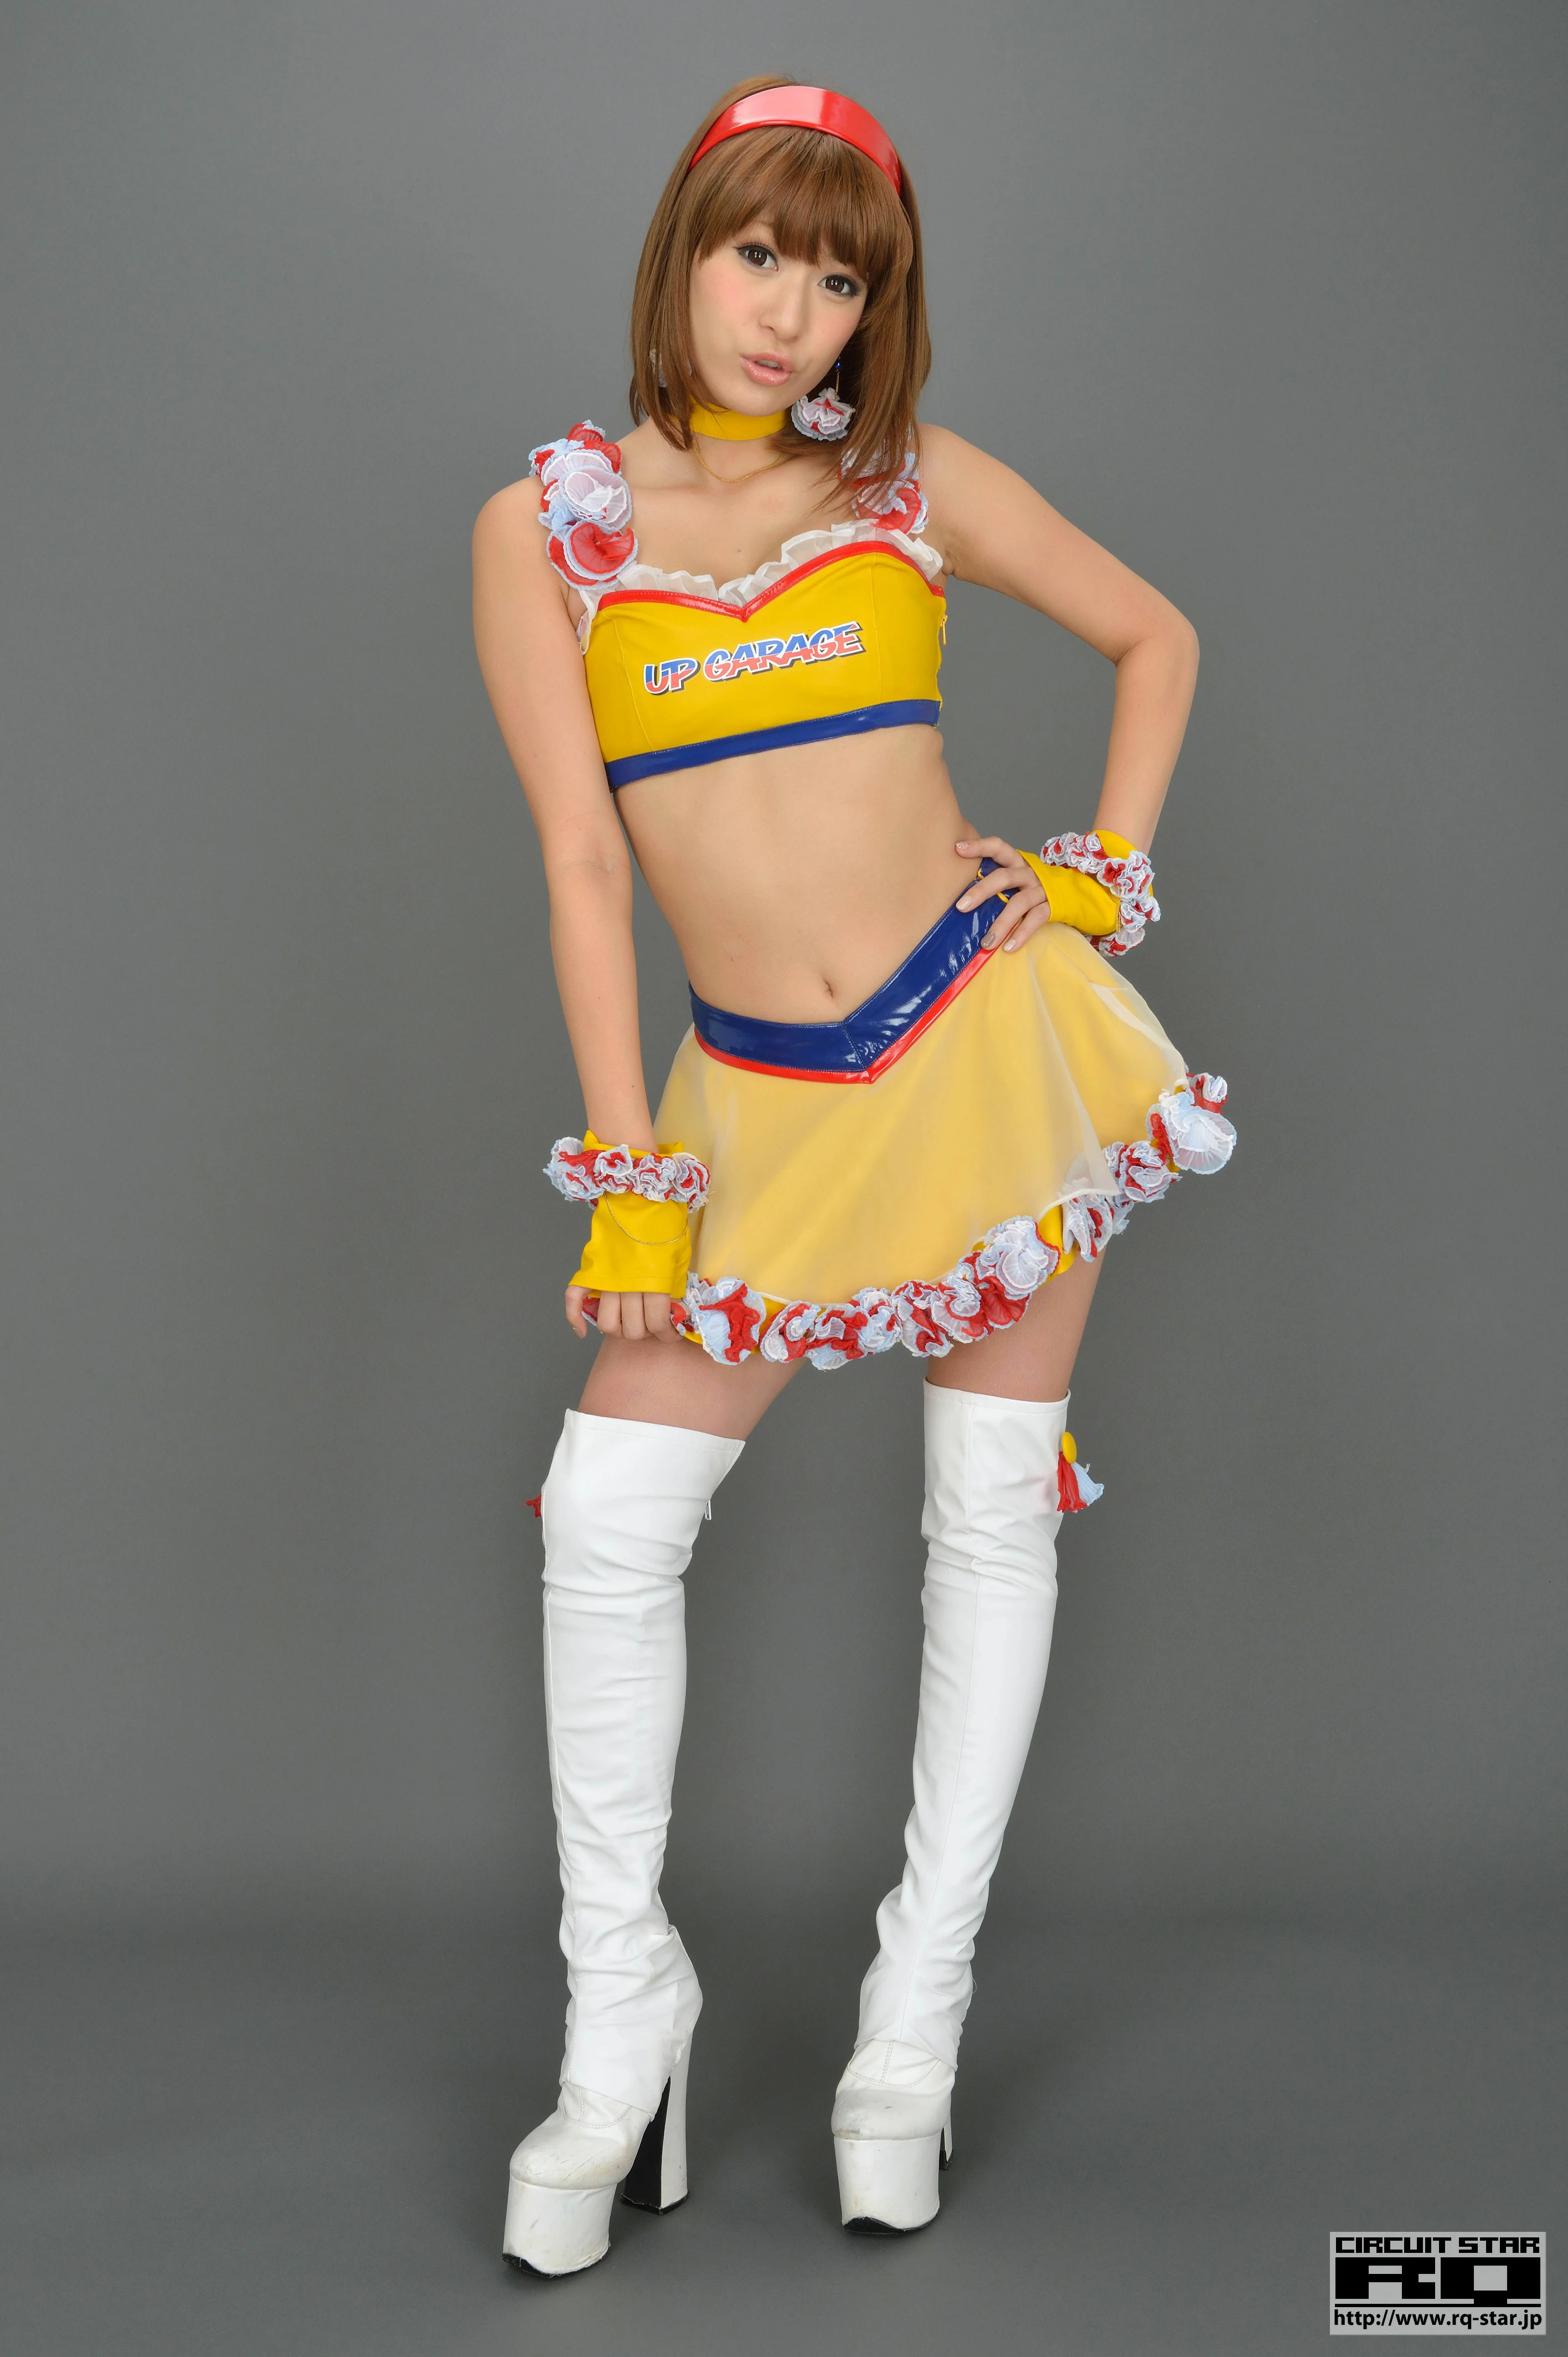 [RQ-STAR写真]NO.00733 日本赛车女郎 しばはらまい（柴原麻衣，Mai Shibahara）黄色制服加短裙性感写真集,024